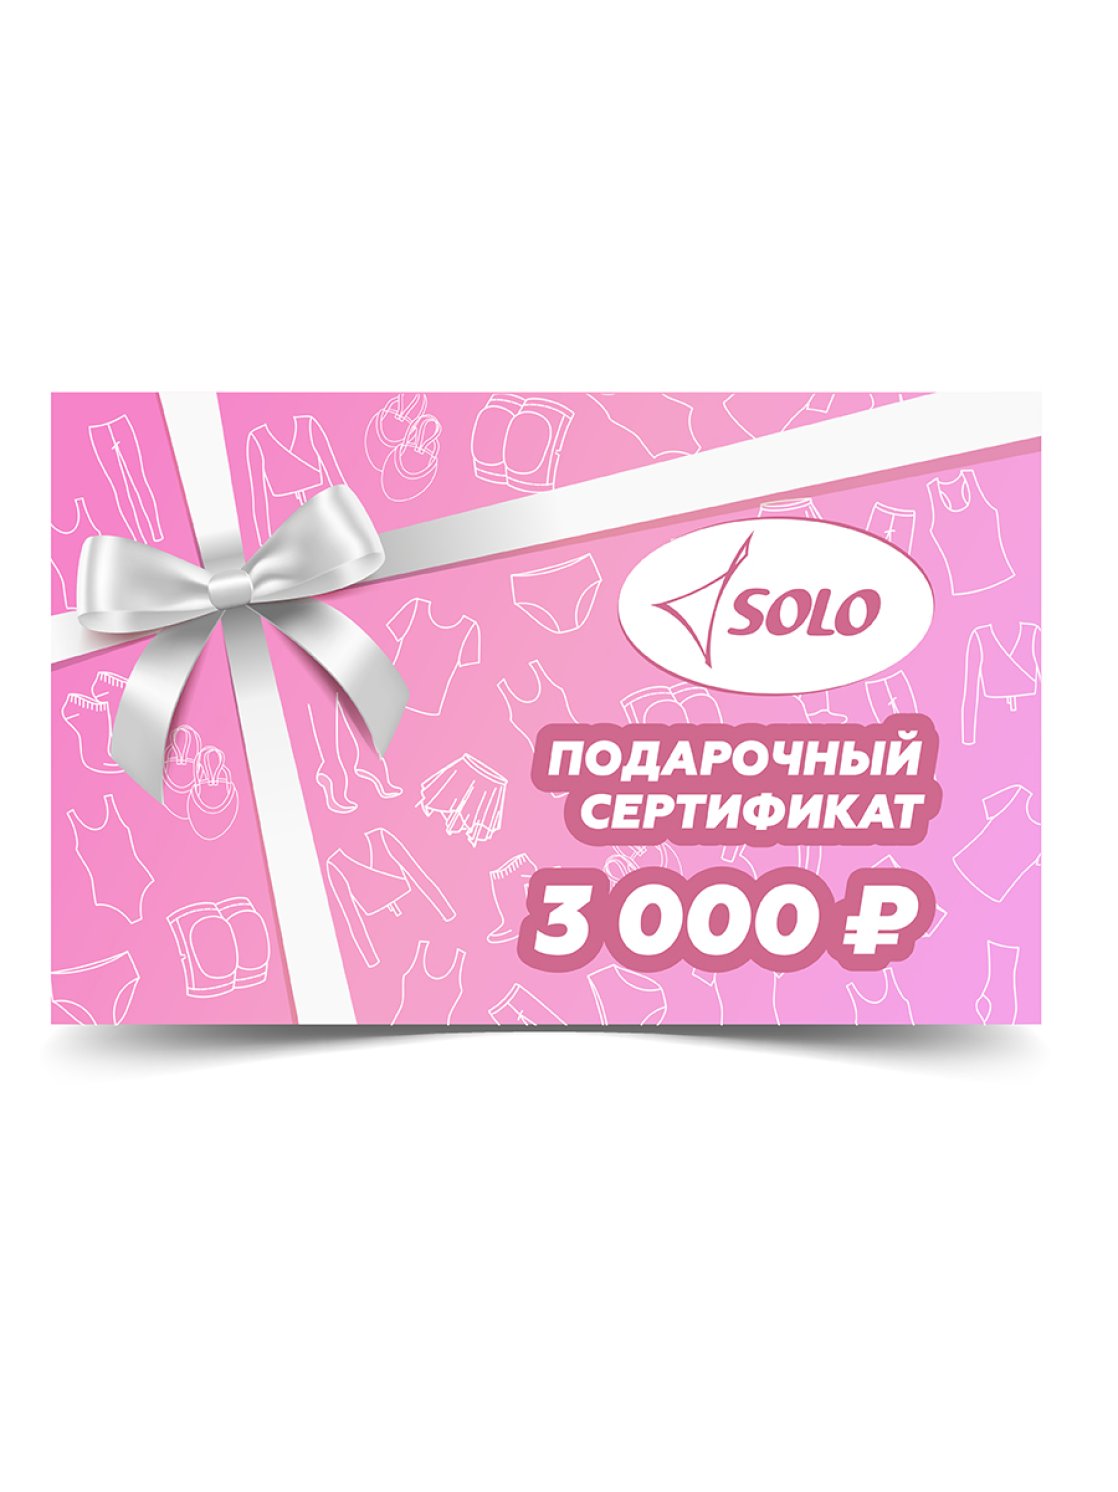 Электронный подарочный сертификат номиналом 3 000 рублей